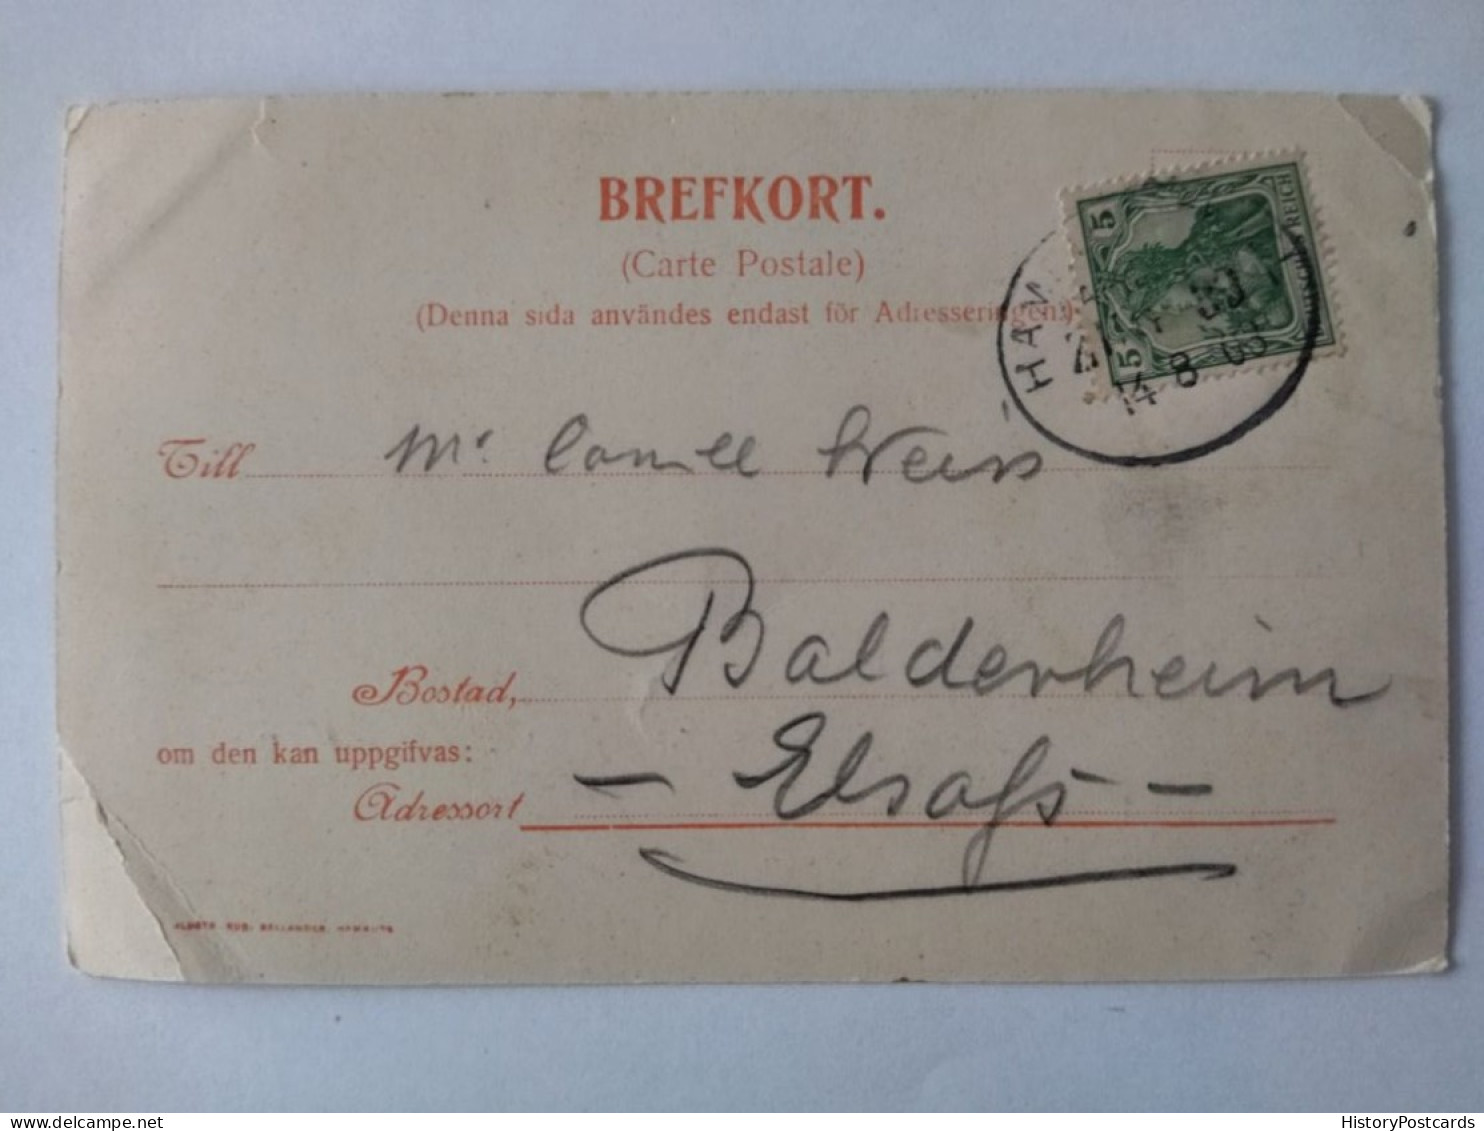 Kaiserlicher Postdampfer Prinz Adalbert Auf See, Hamburg, 1903 - Passagiersschepen